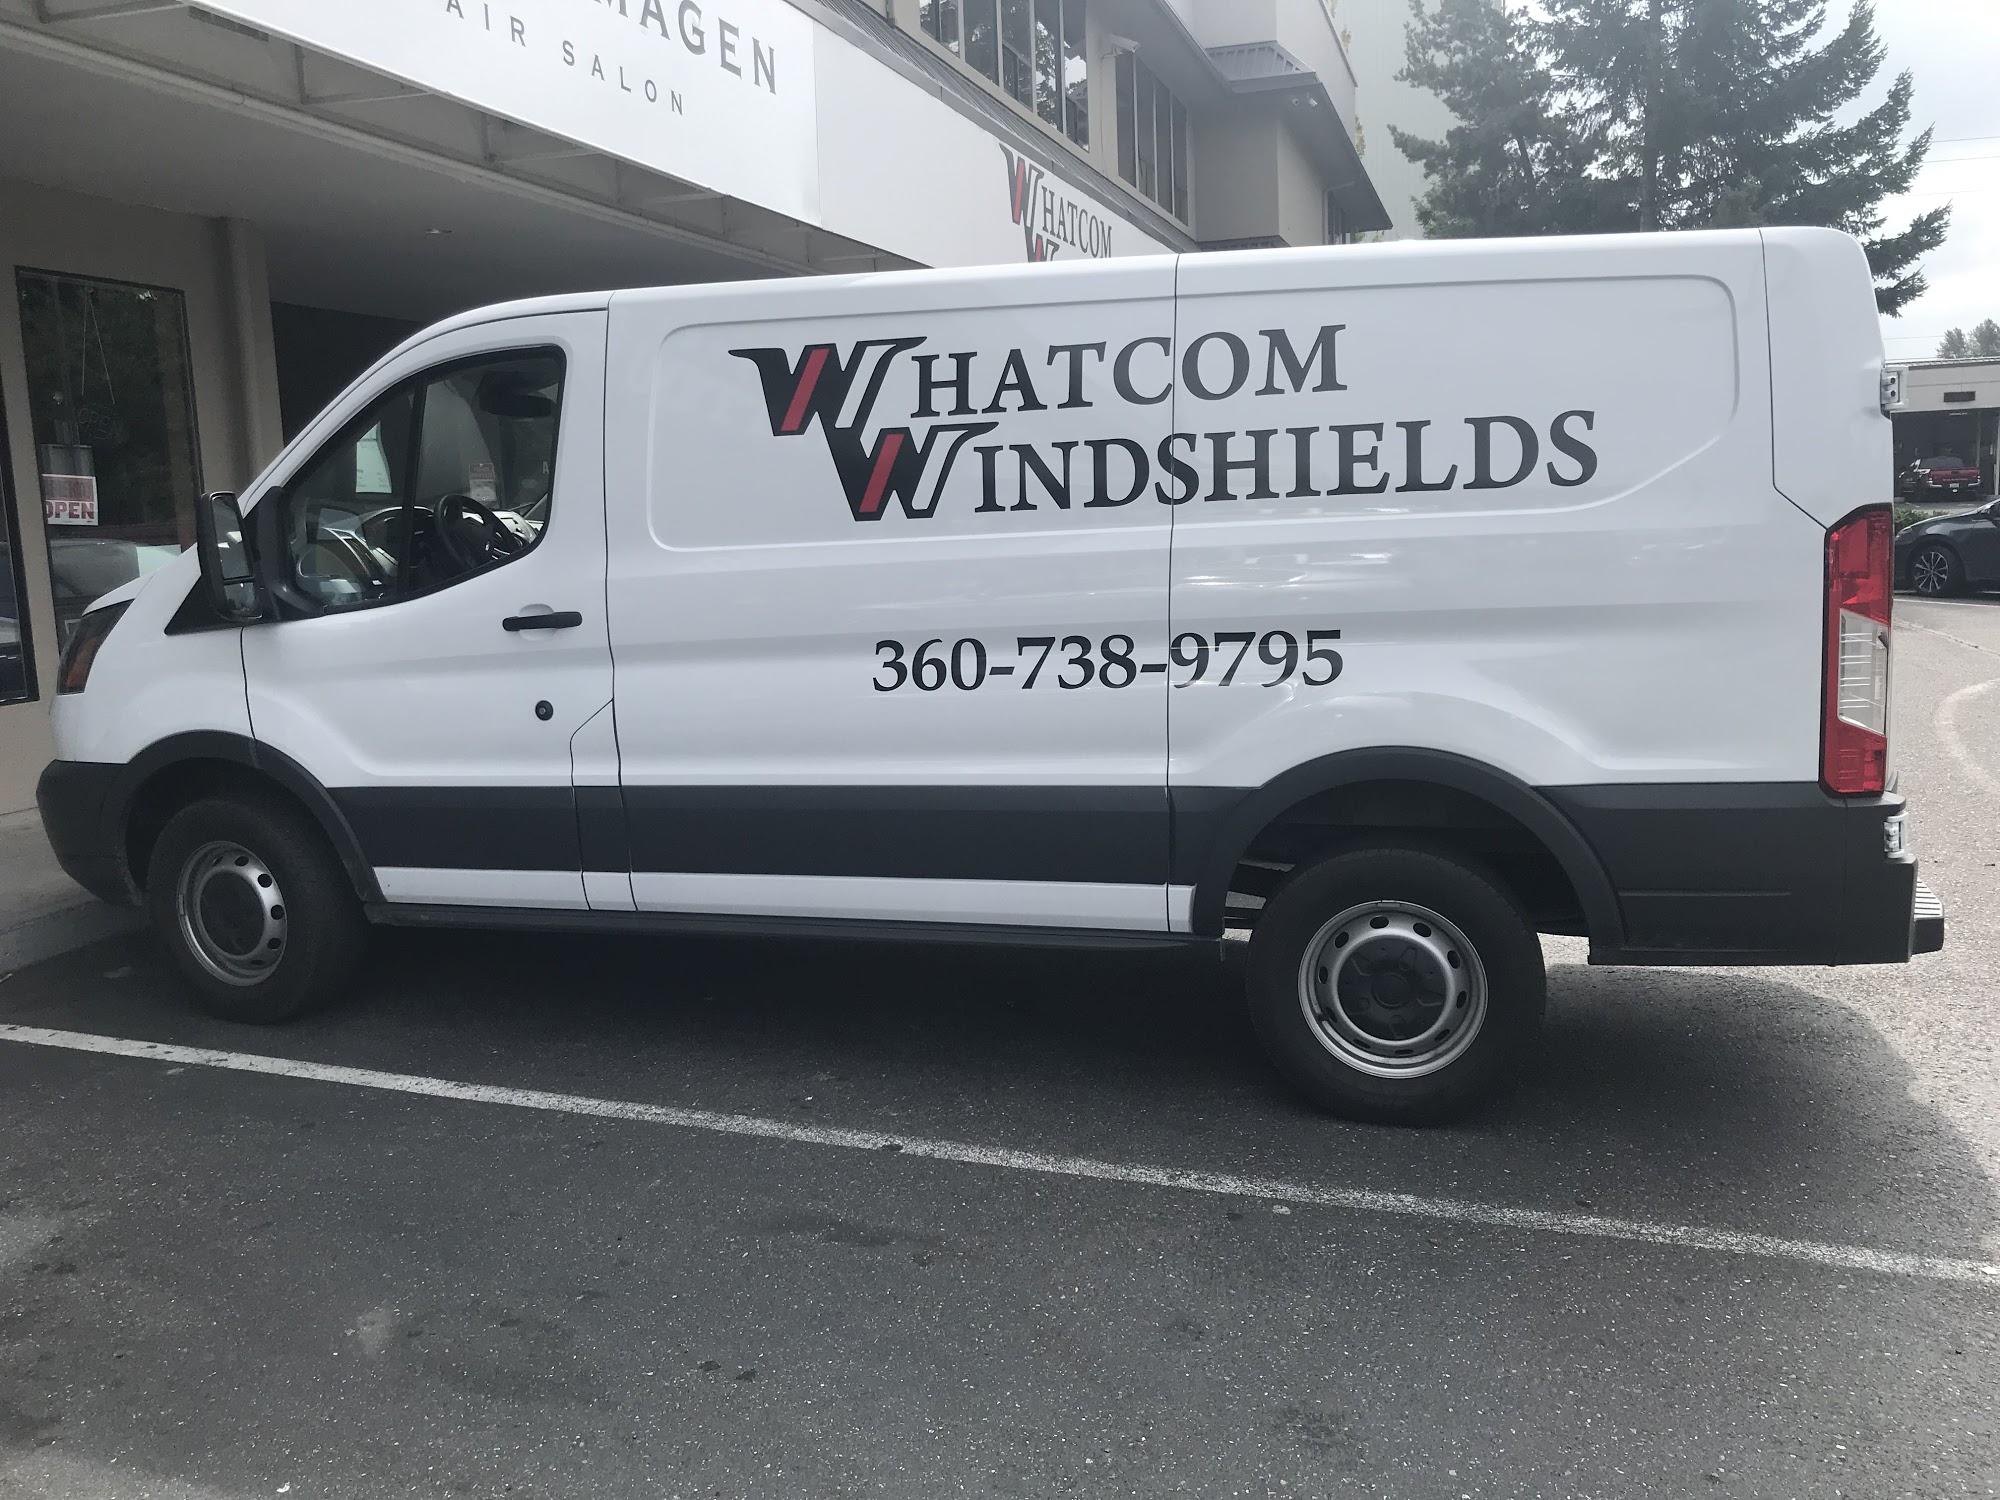 Whatcom Windshields